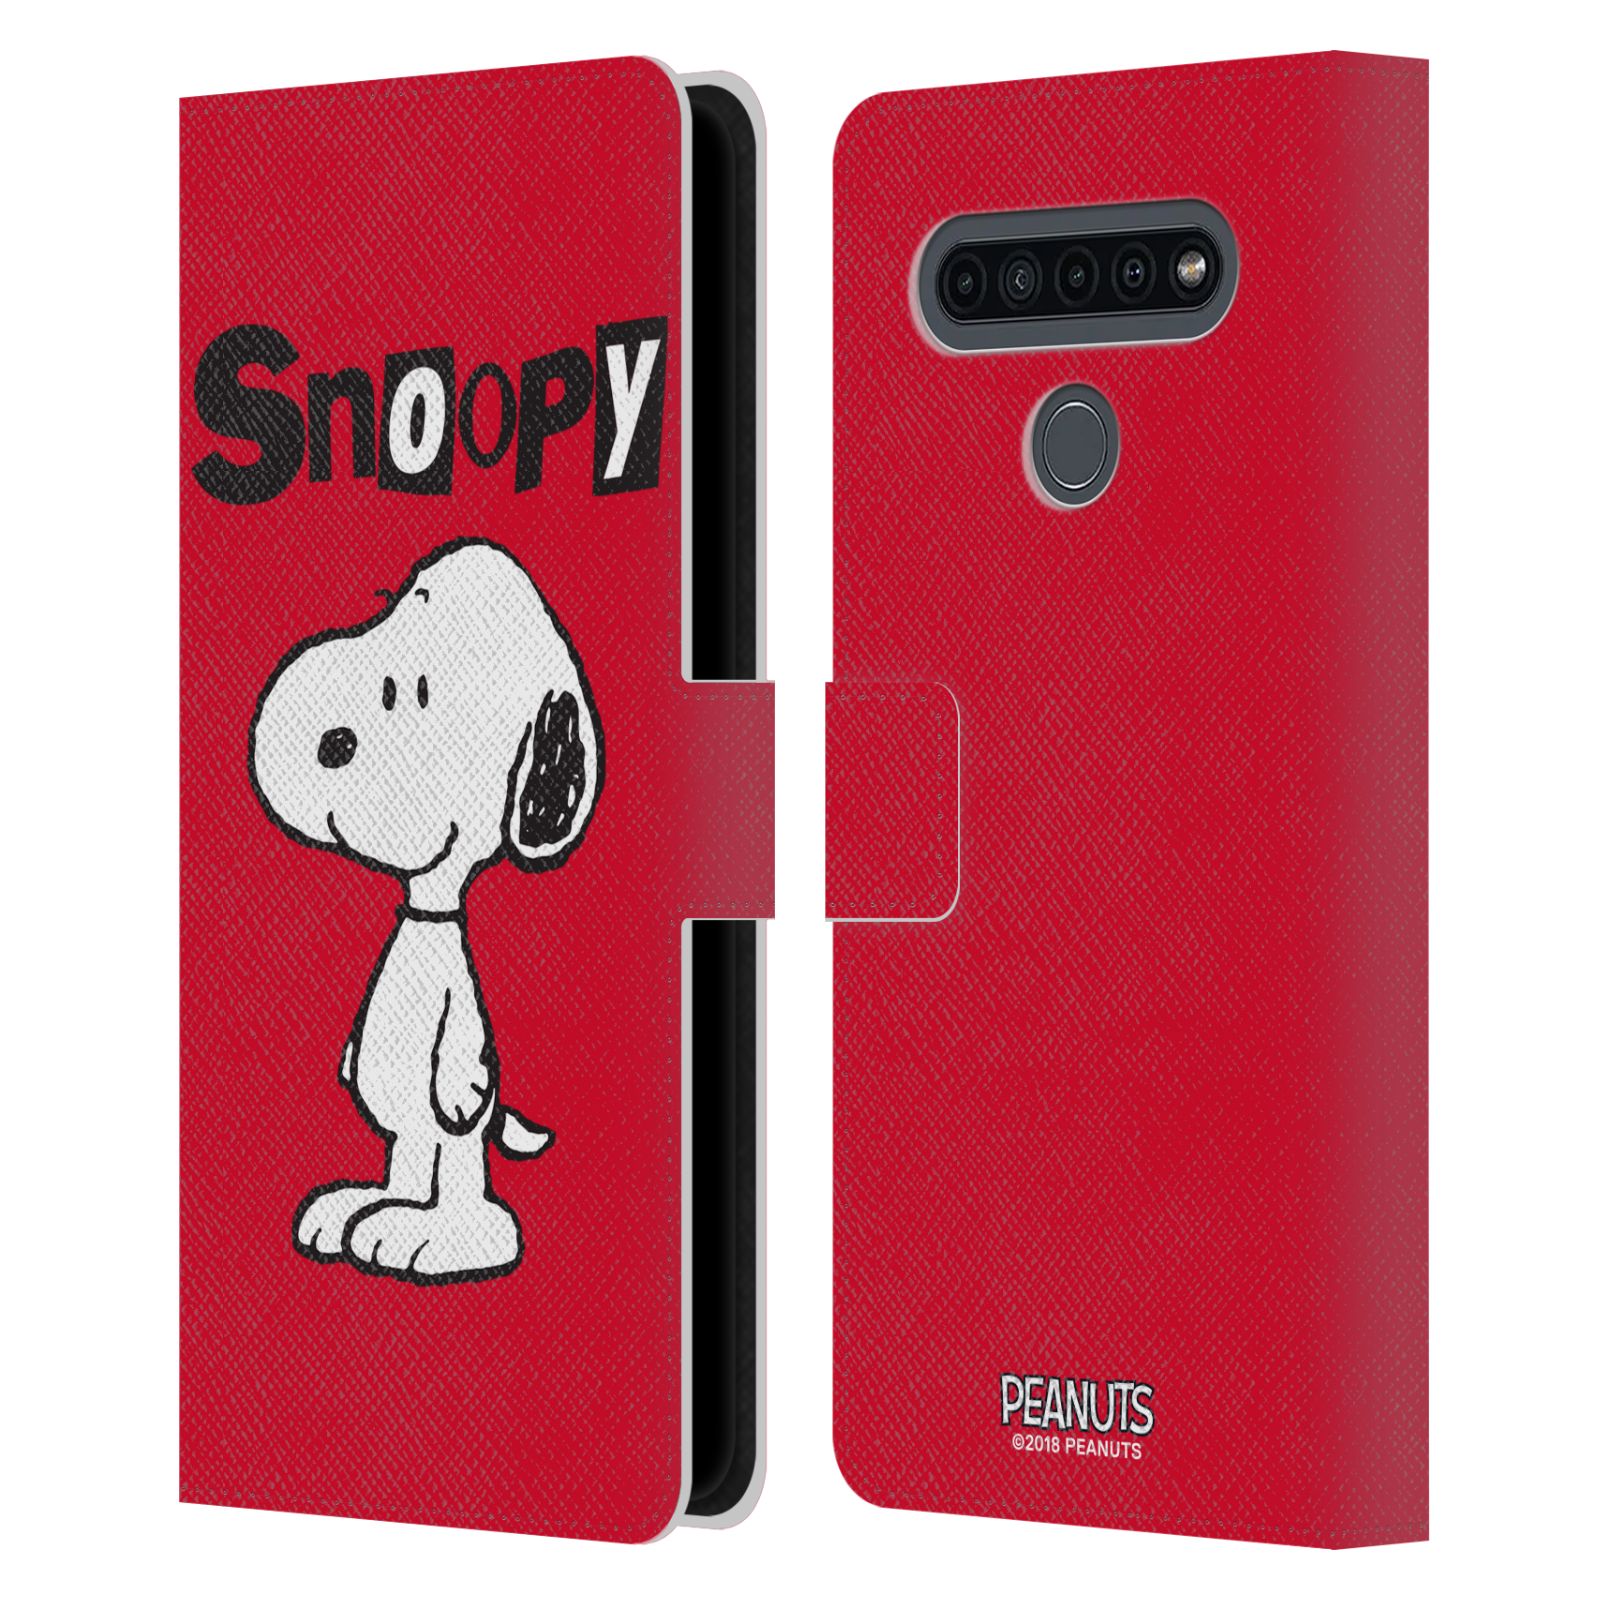 Pouzdro na mobil LG K41s  - HEAD CASE - Peanuts - Snoopy červená